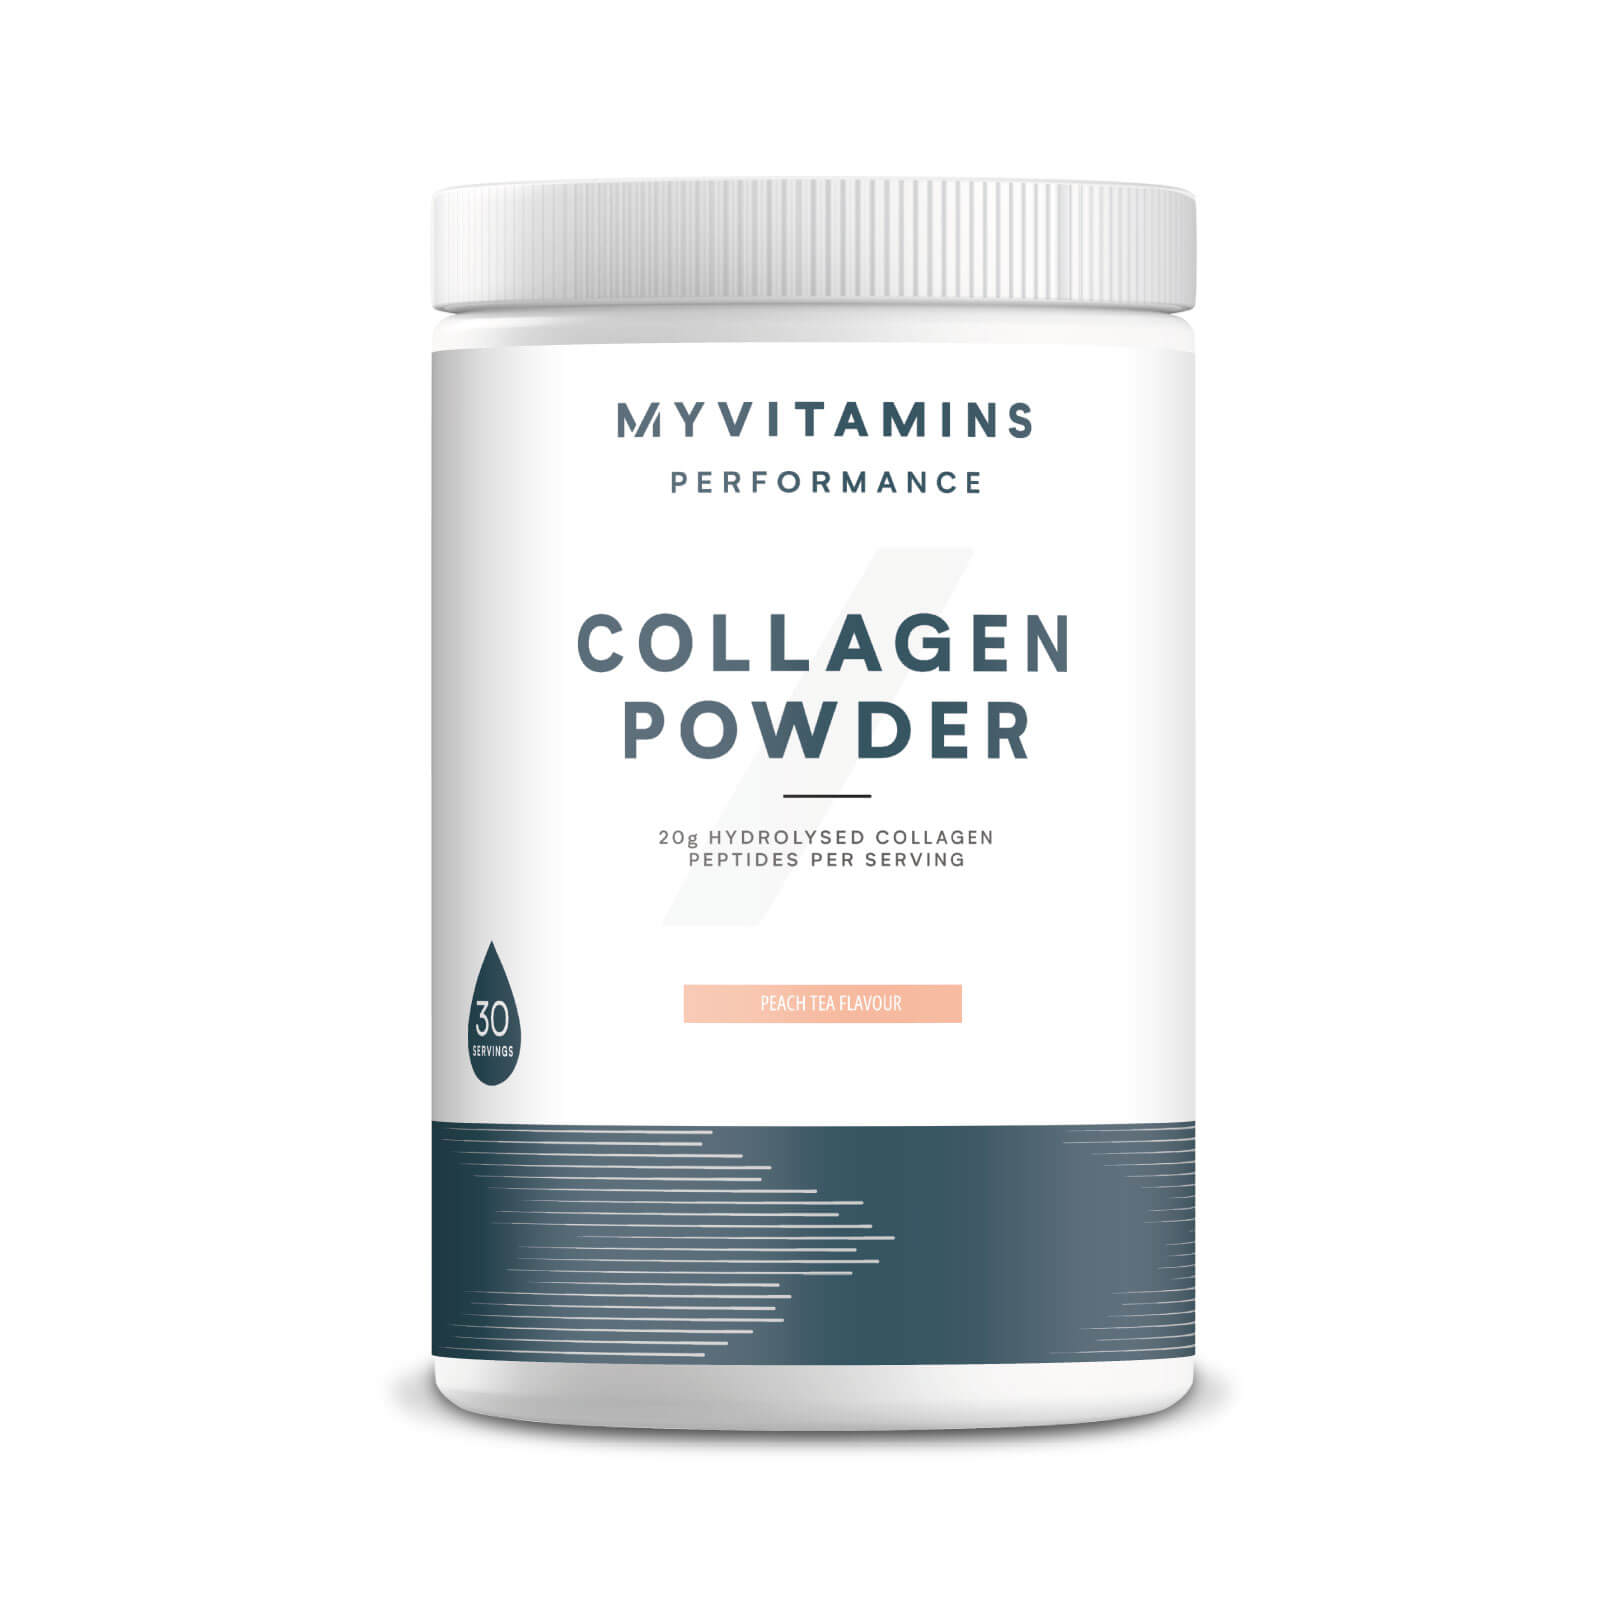 Myvitamins Collagen Powder Tub - 630g - Peach Tea